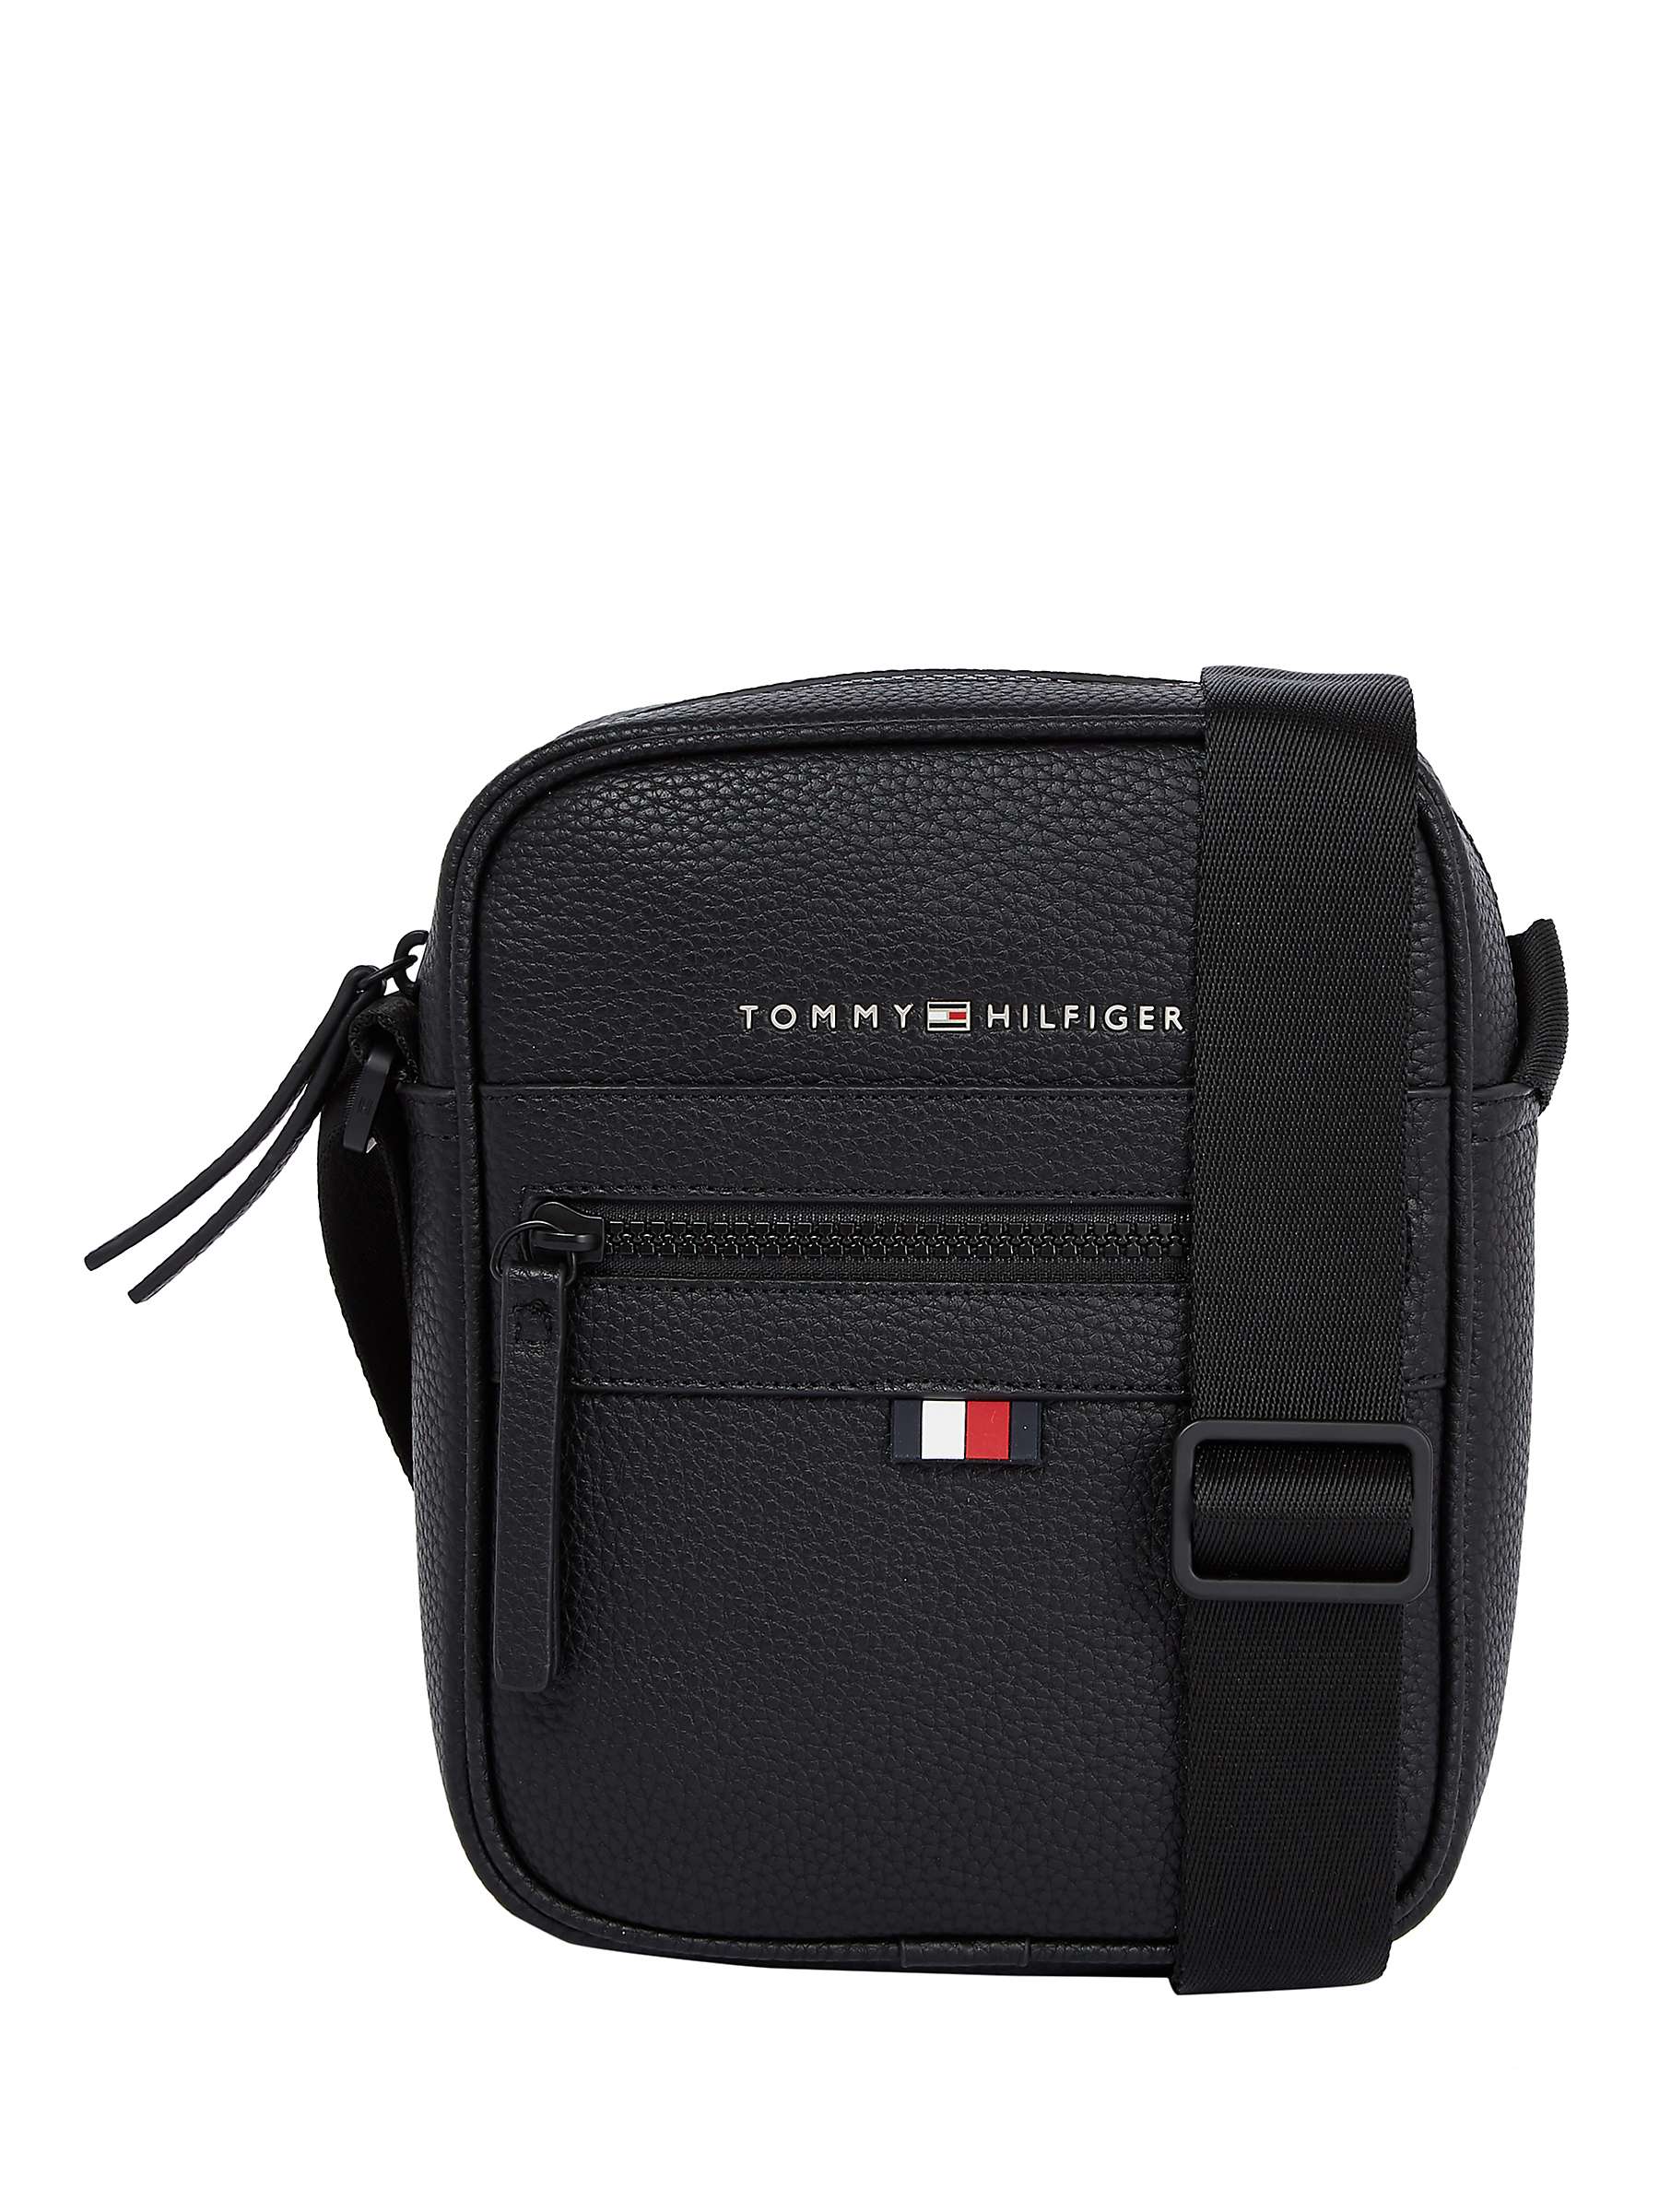 Buy Tommy Hilfiger Essential Mini Reporter Bag, Black Online at johnlewis.com